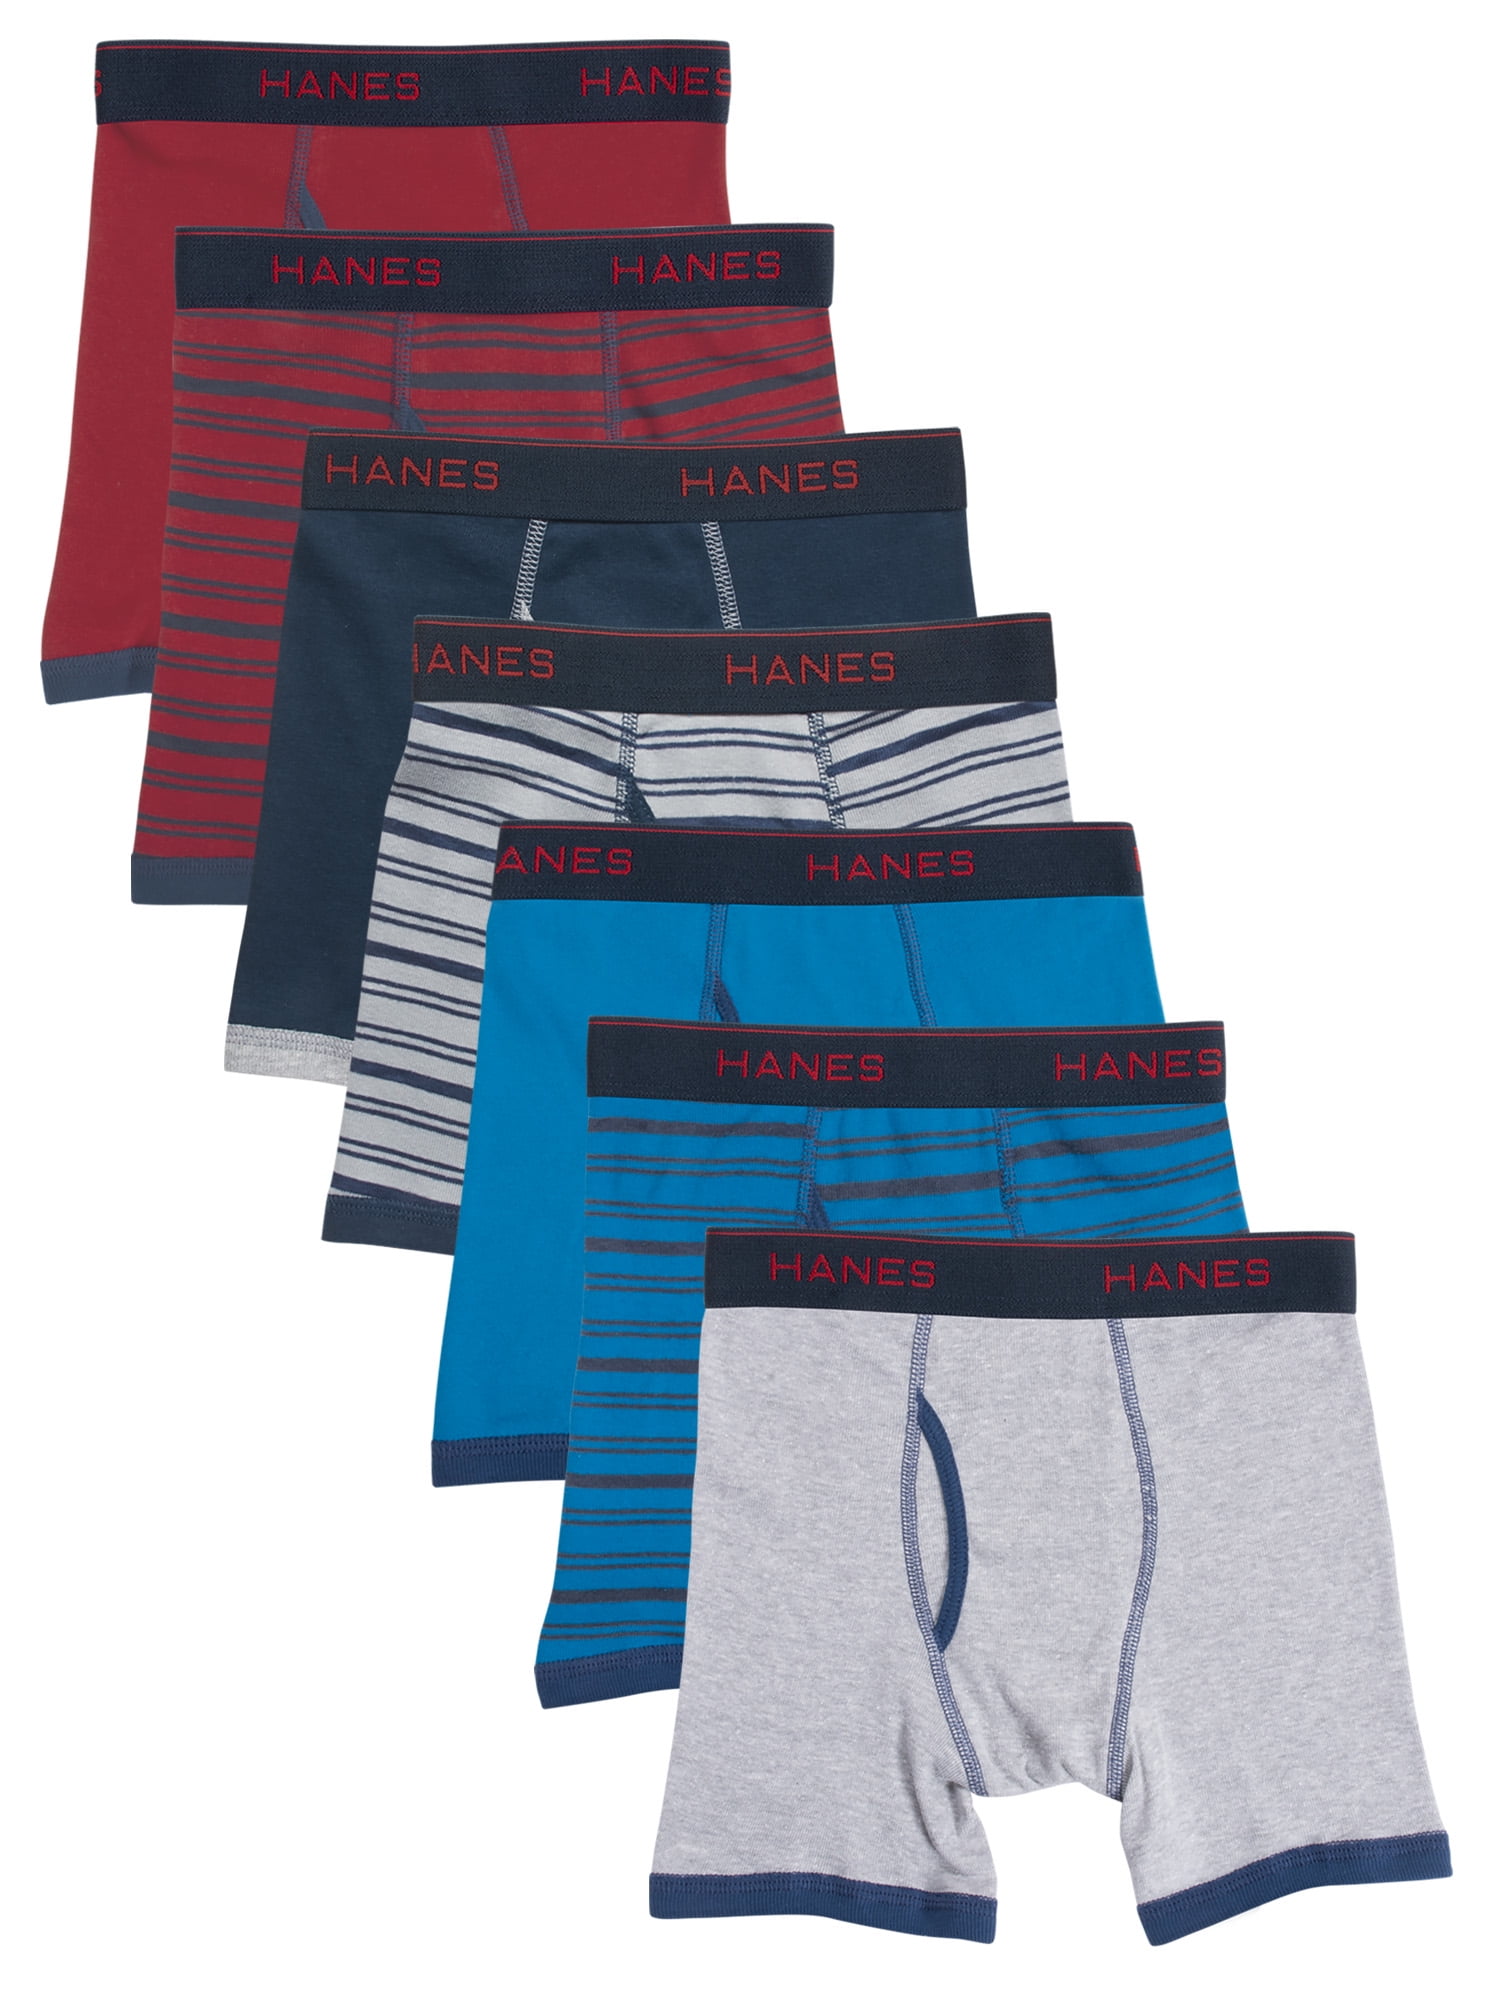 New 8 pack Hanes Boy's Boxer Briefs Shorts sz S 6-8 Tagless Underwear men's new 